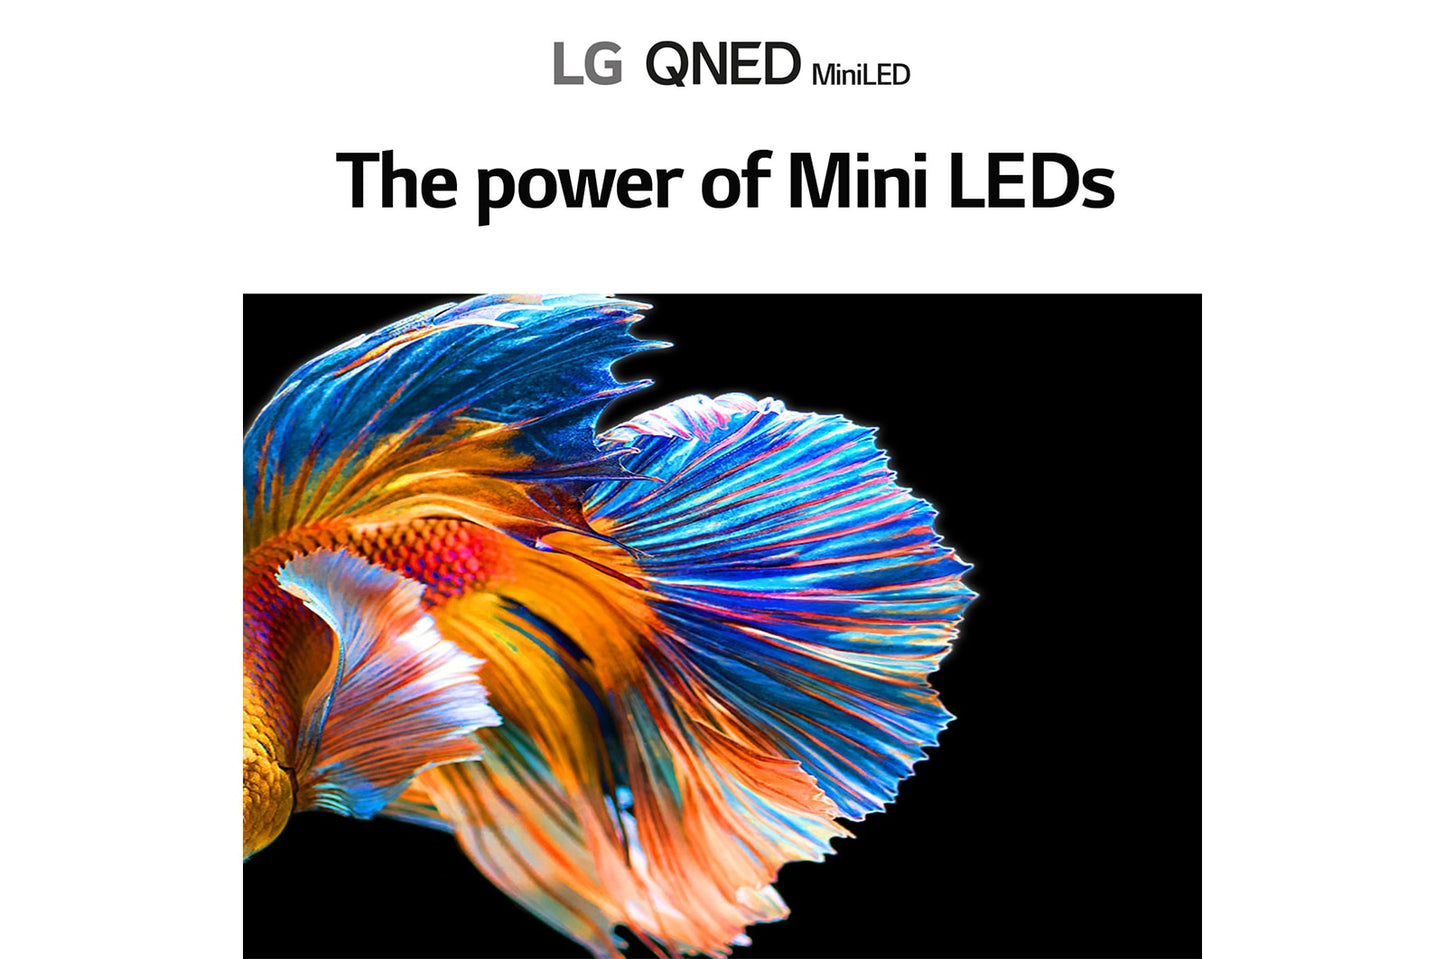 LG 86 Inch QNED 4K SMART TV QUANTUM DOT + NANO CELL + MINI LED - QNED91PVA